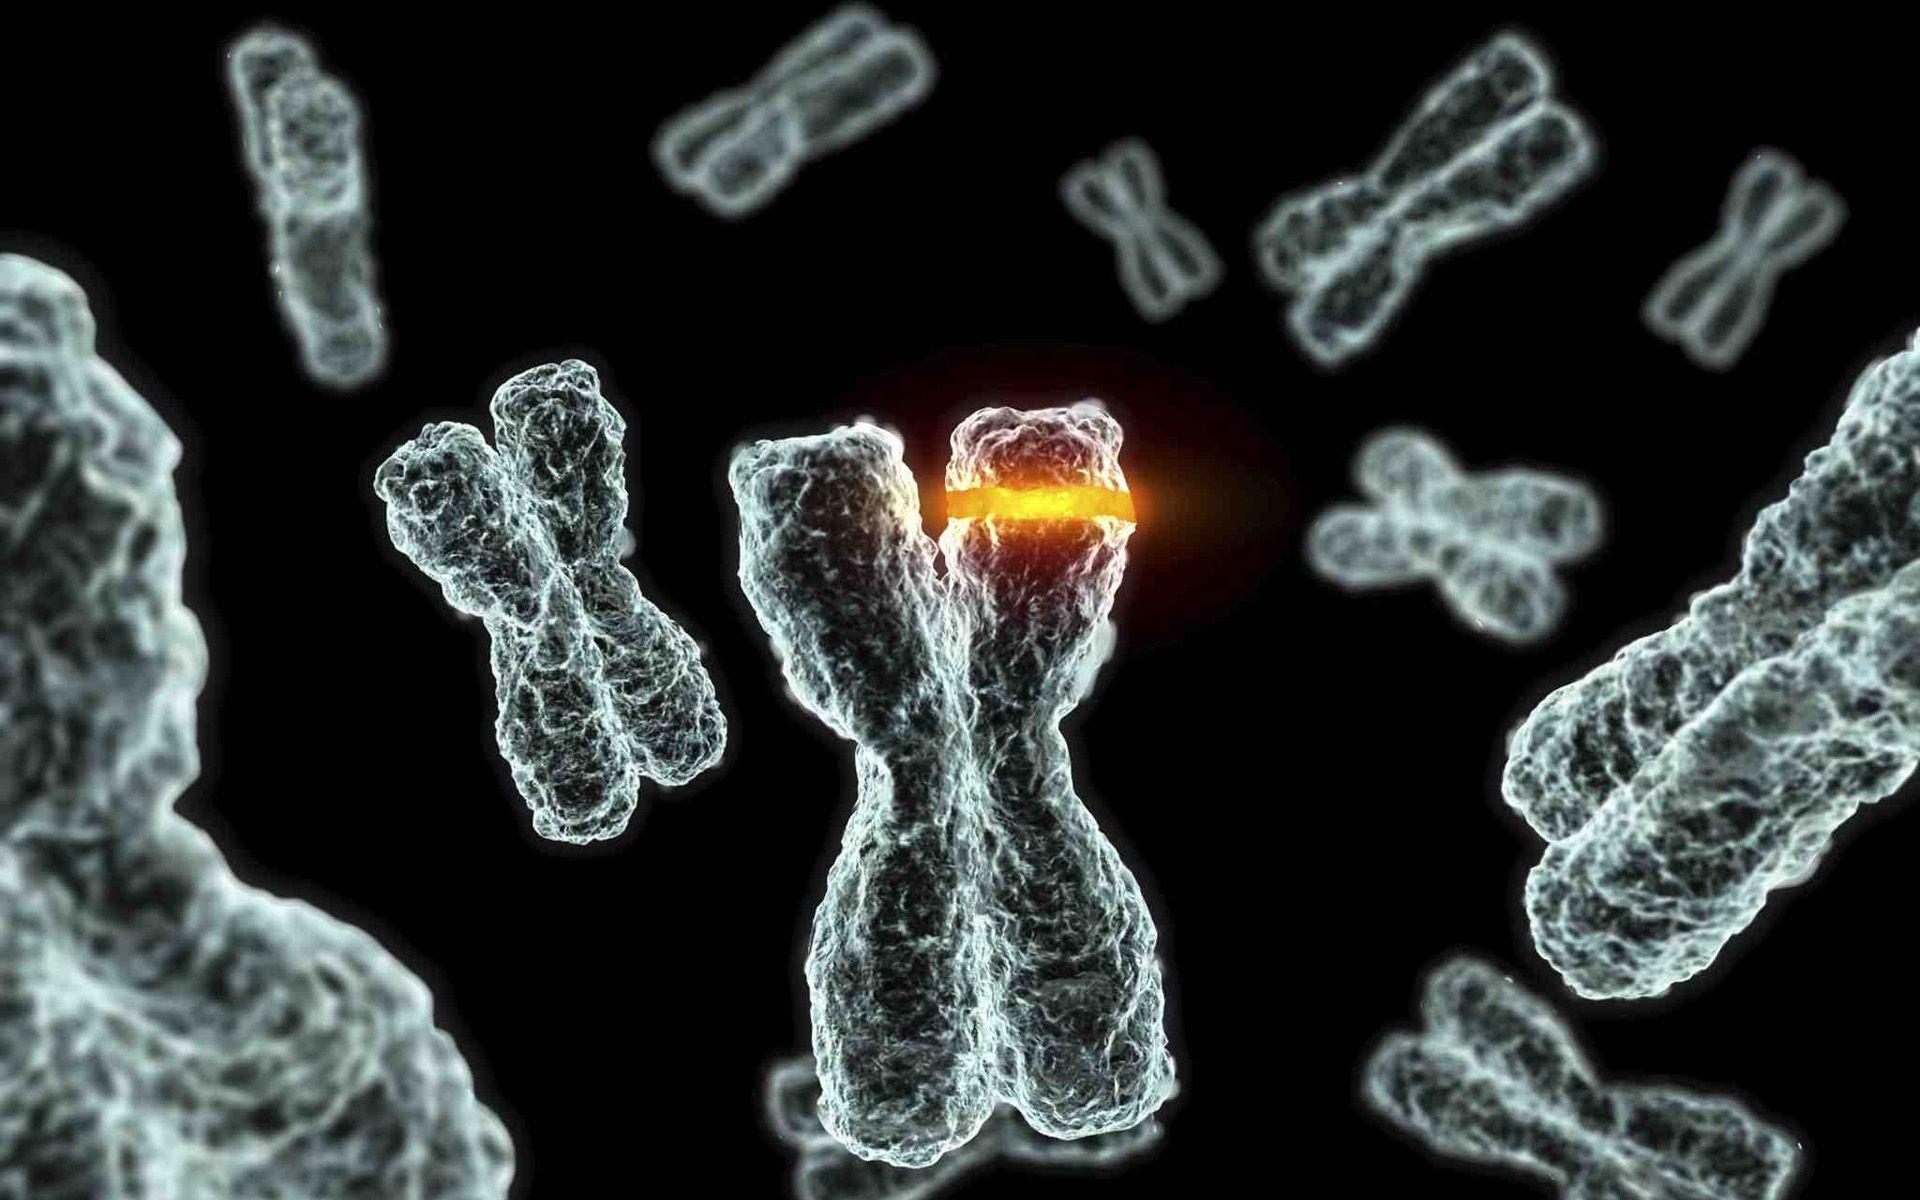 chromosome background